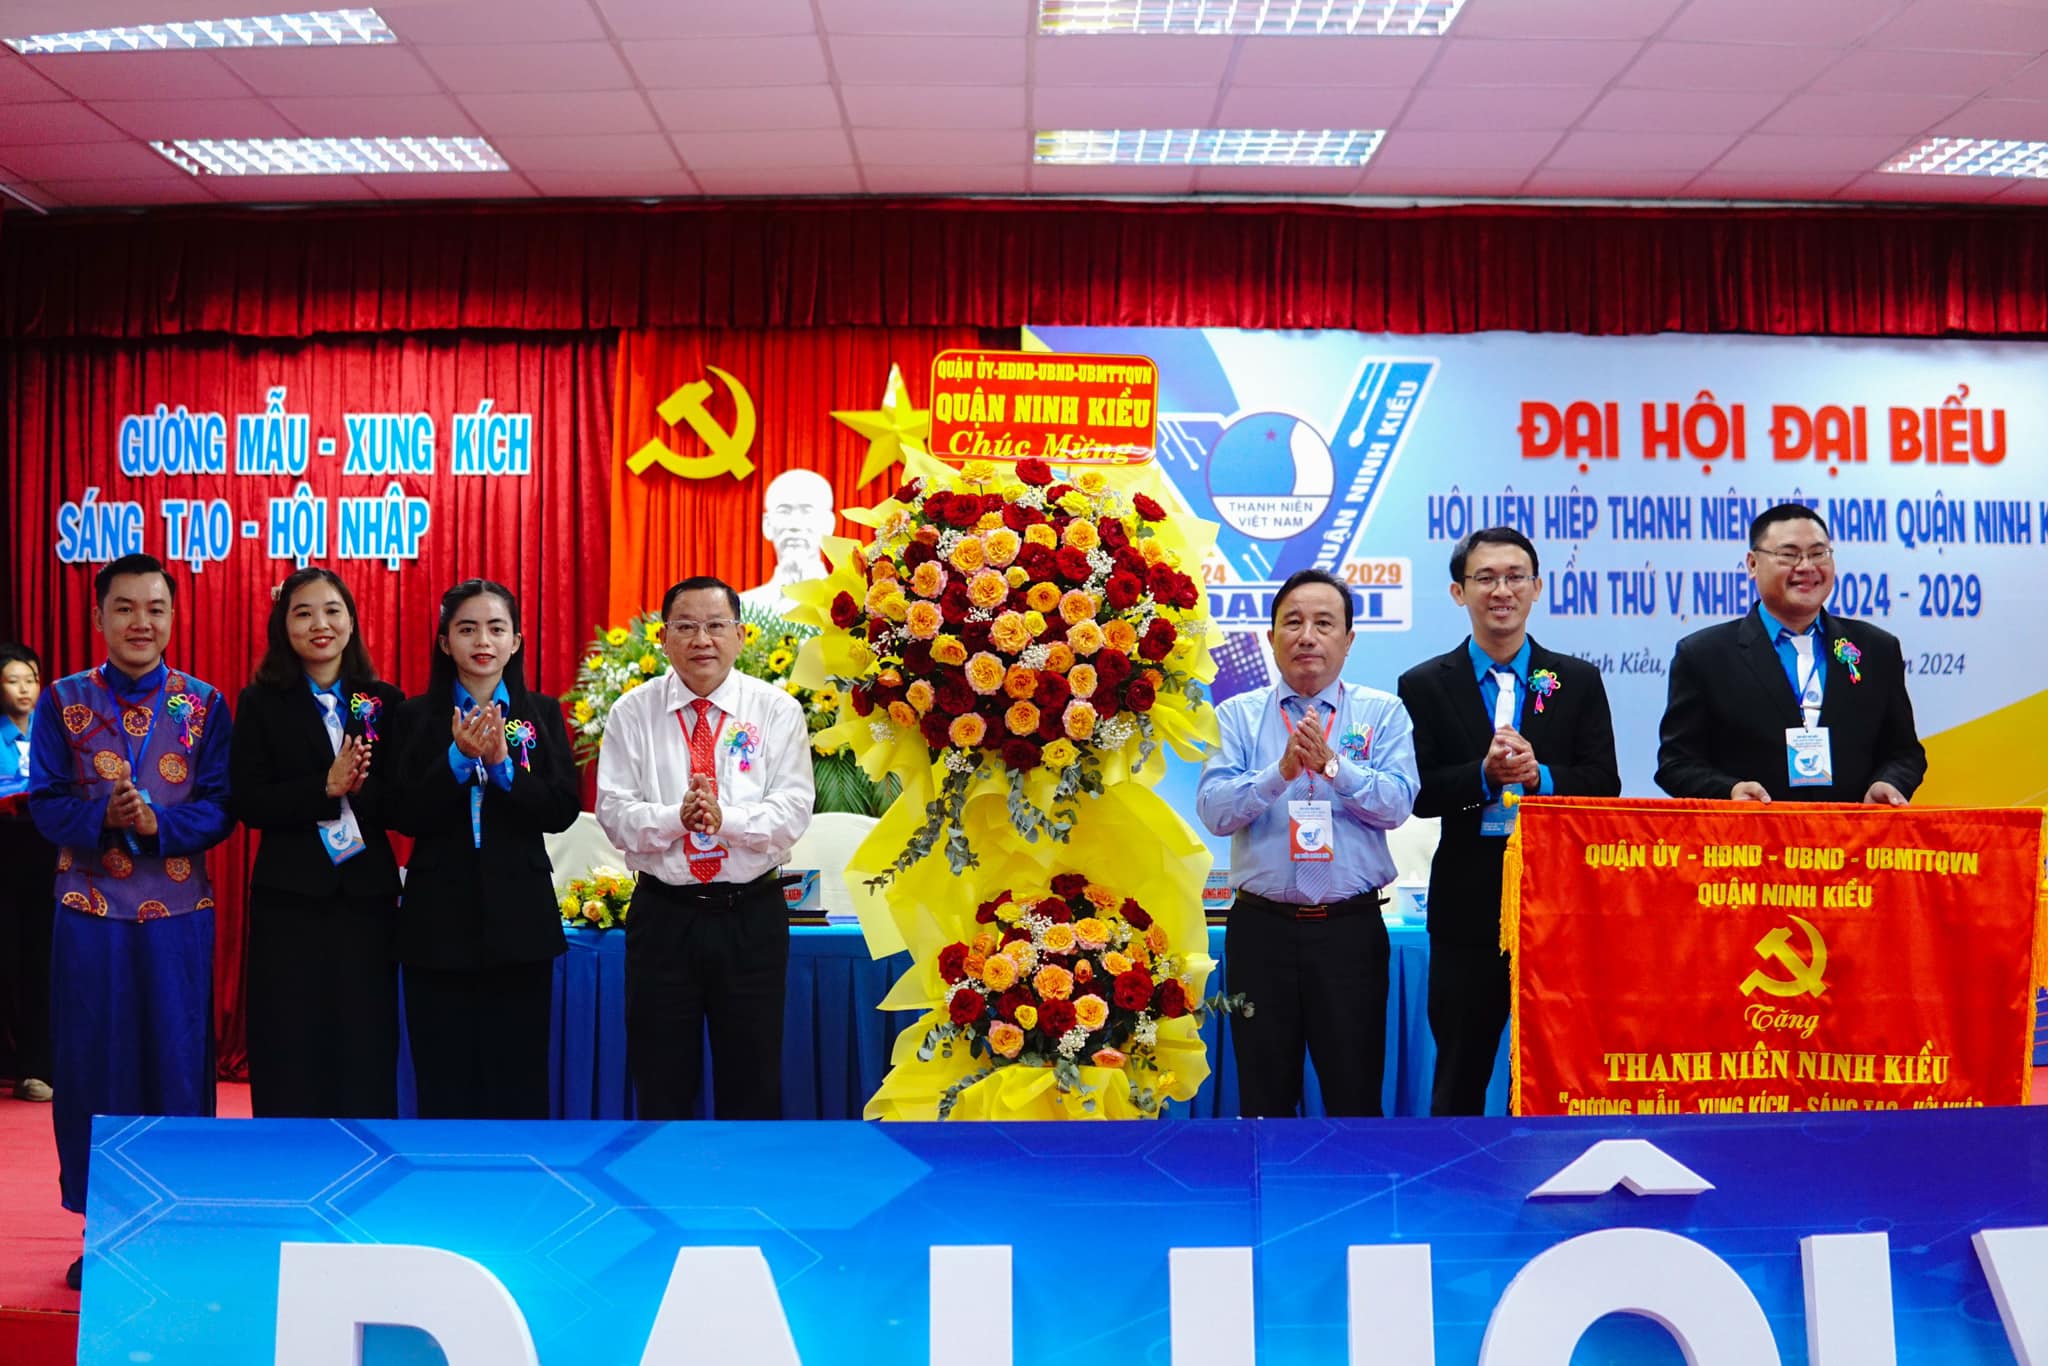 A01: Lãnh đạo thành phố và quận Ninh Kiều chúc mừng Đại hội